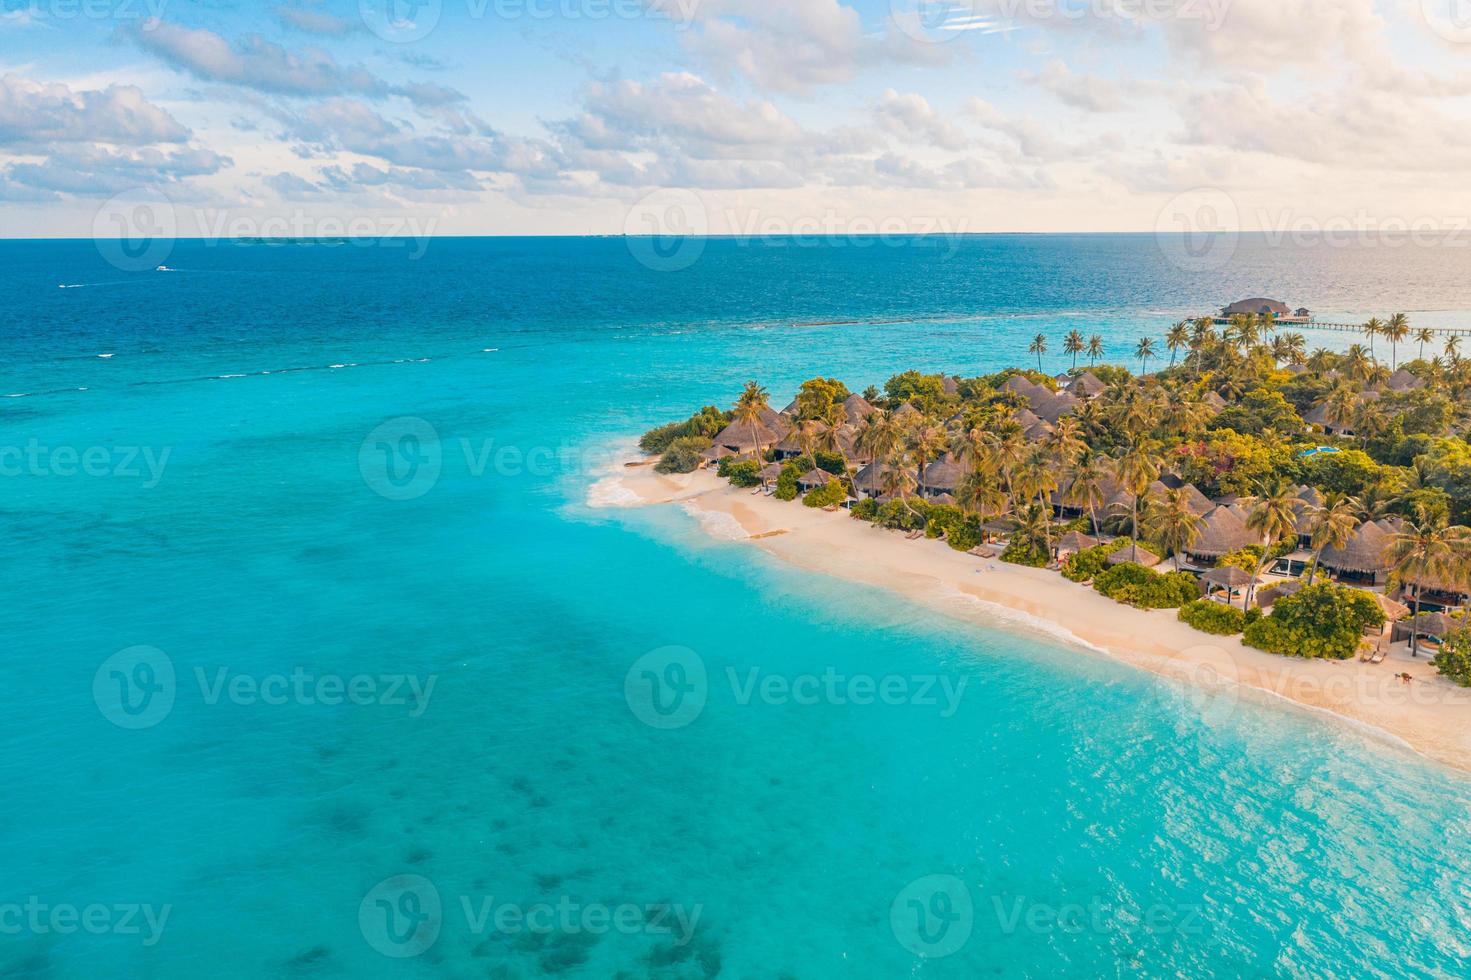 maldiven paradijs landschap. tropisch luchtlandschap, zeegezicht met lange steiger, watervilla's met geweldig zee- en lagunestrand, tropische natuur. exotische toeristische bestemming banner, zomervakantie foto